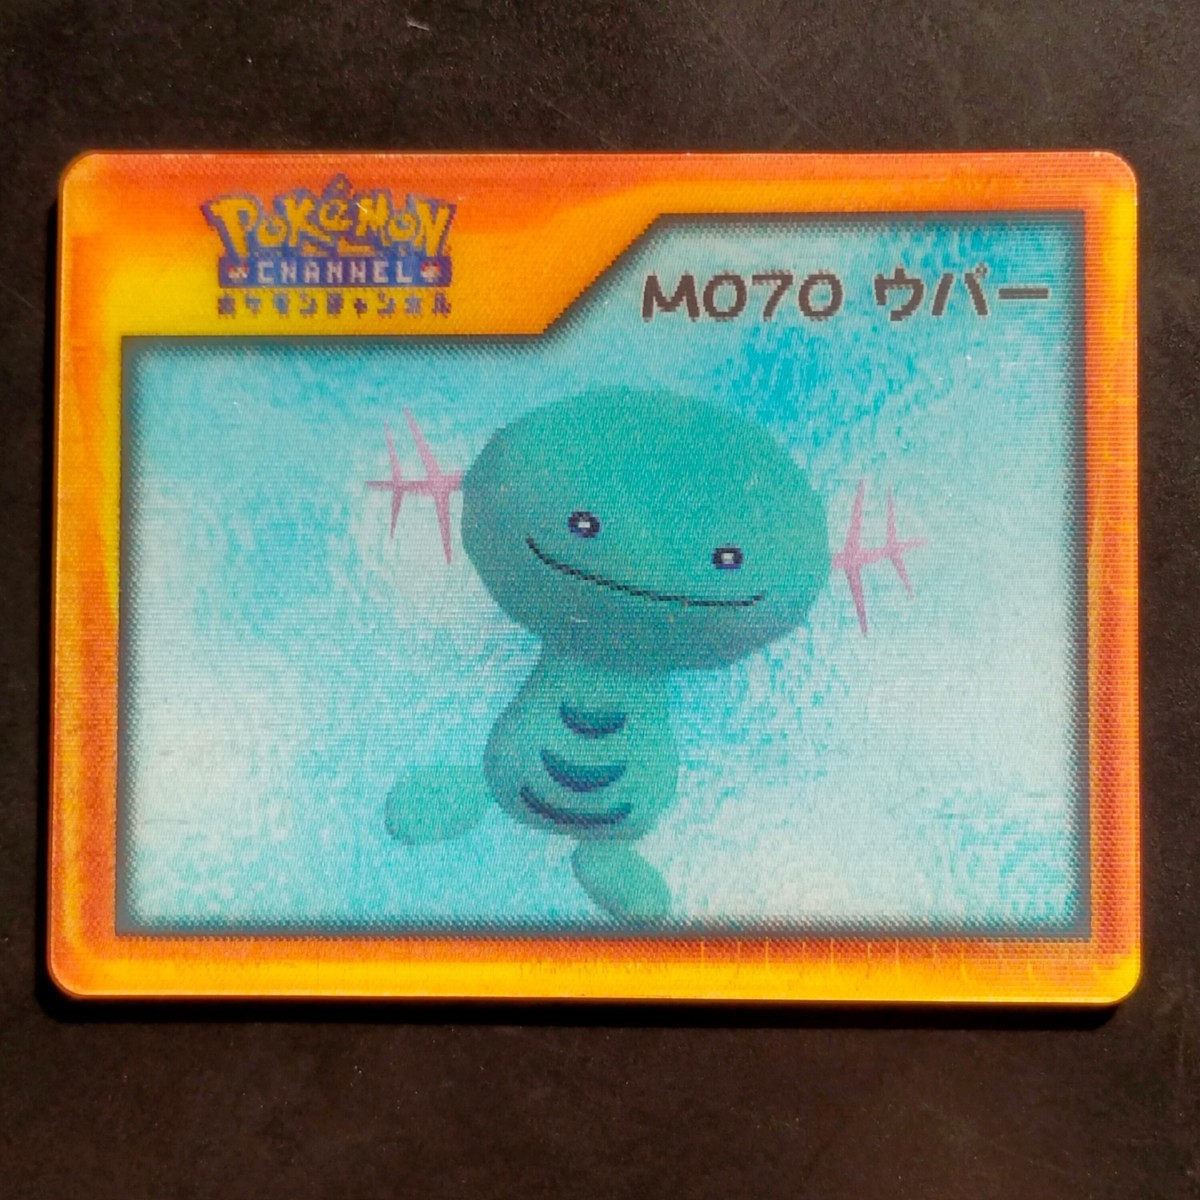 ウパー M070 ナイス カード / POKEMON CHANNEL ポケモン チャンネル レンチキュラー NICE CARD Nice Card アドバンスジェネレーション